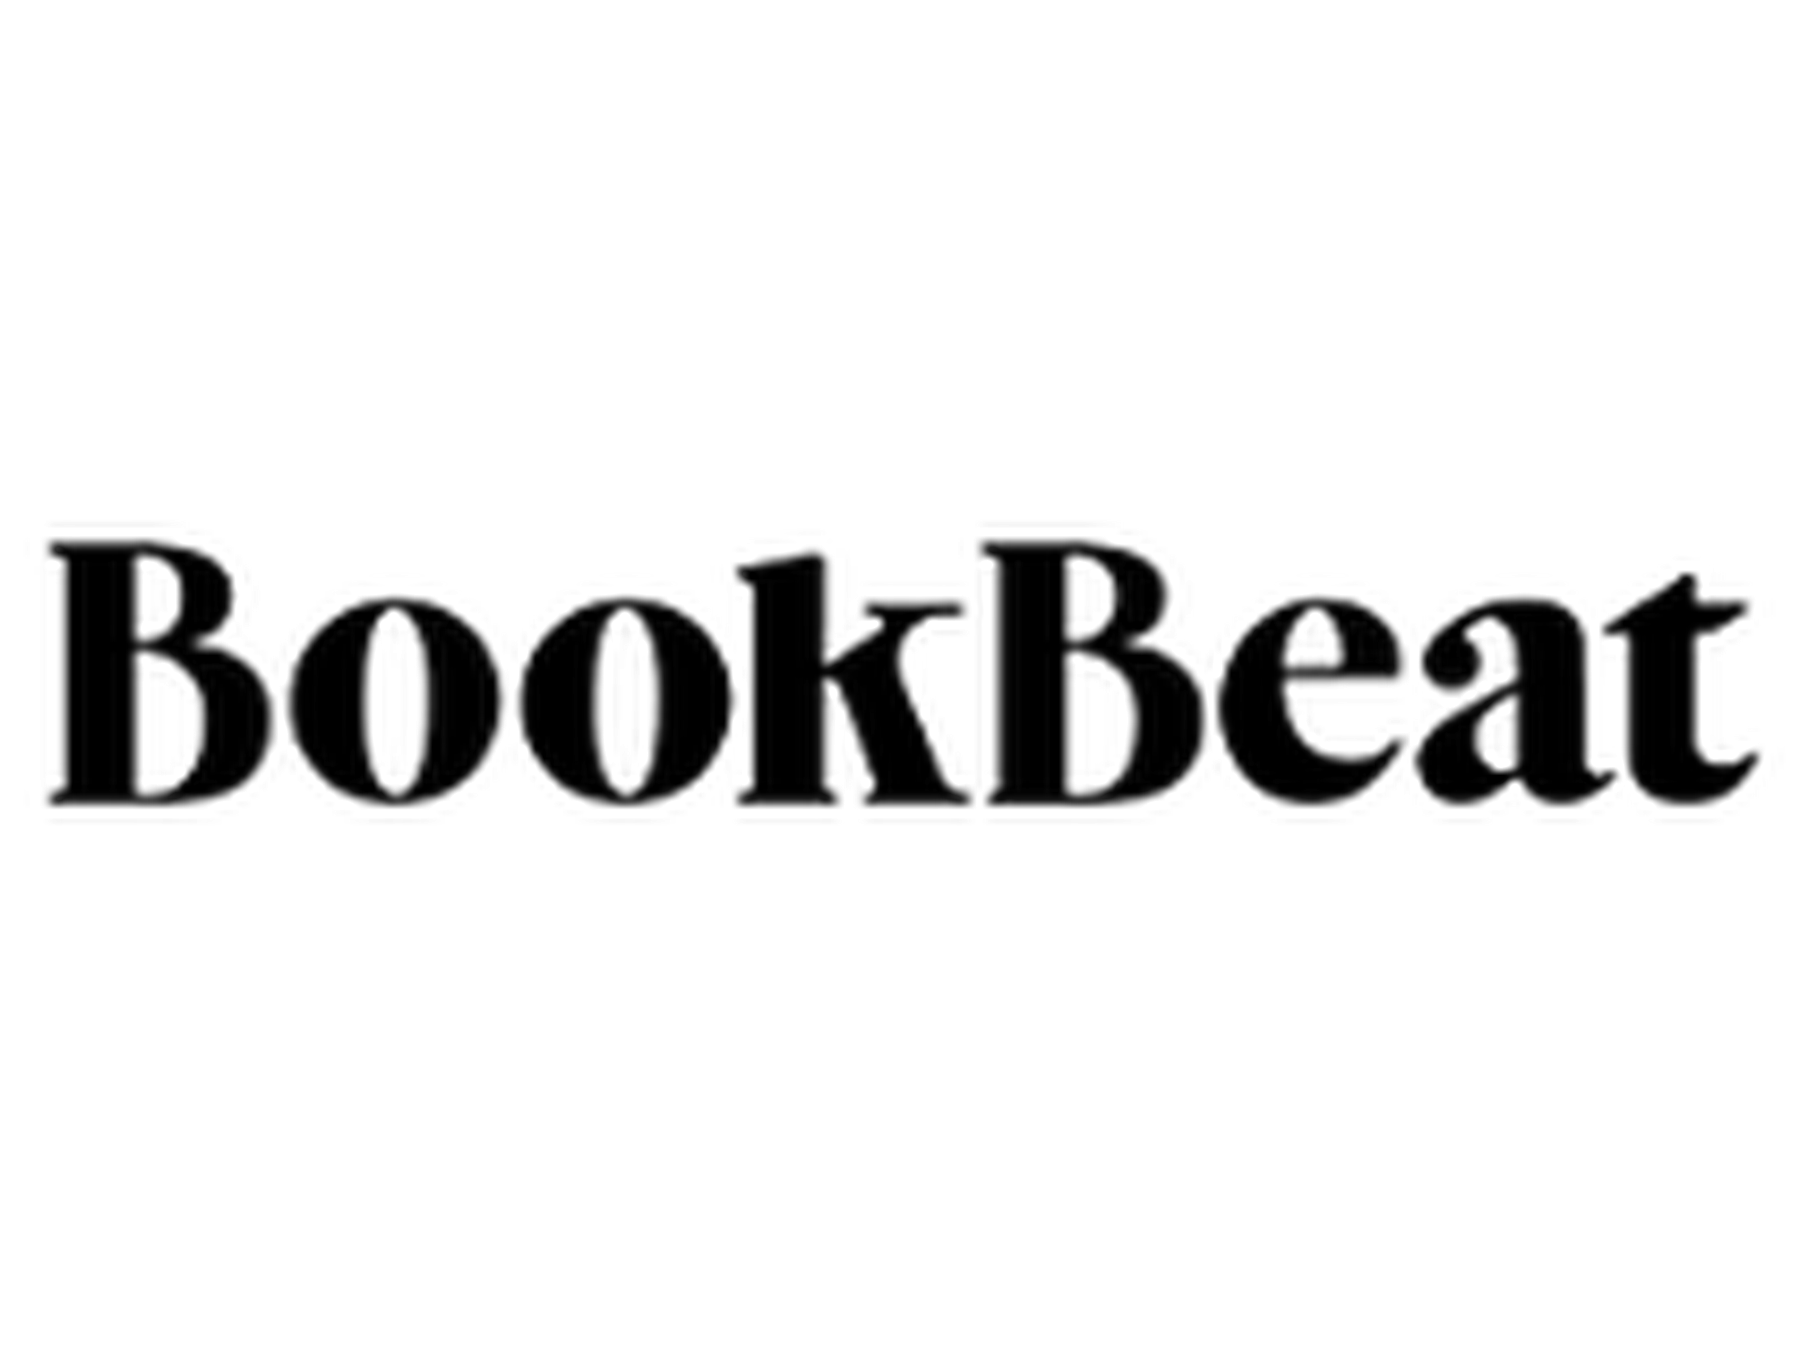 BookBeat rabatkoder